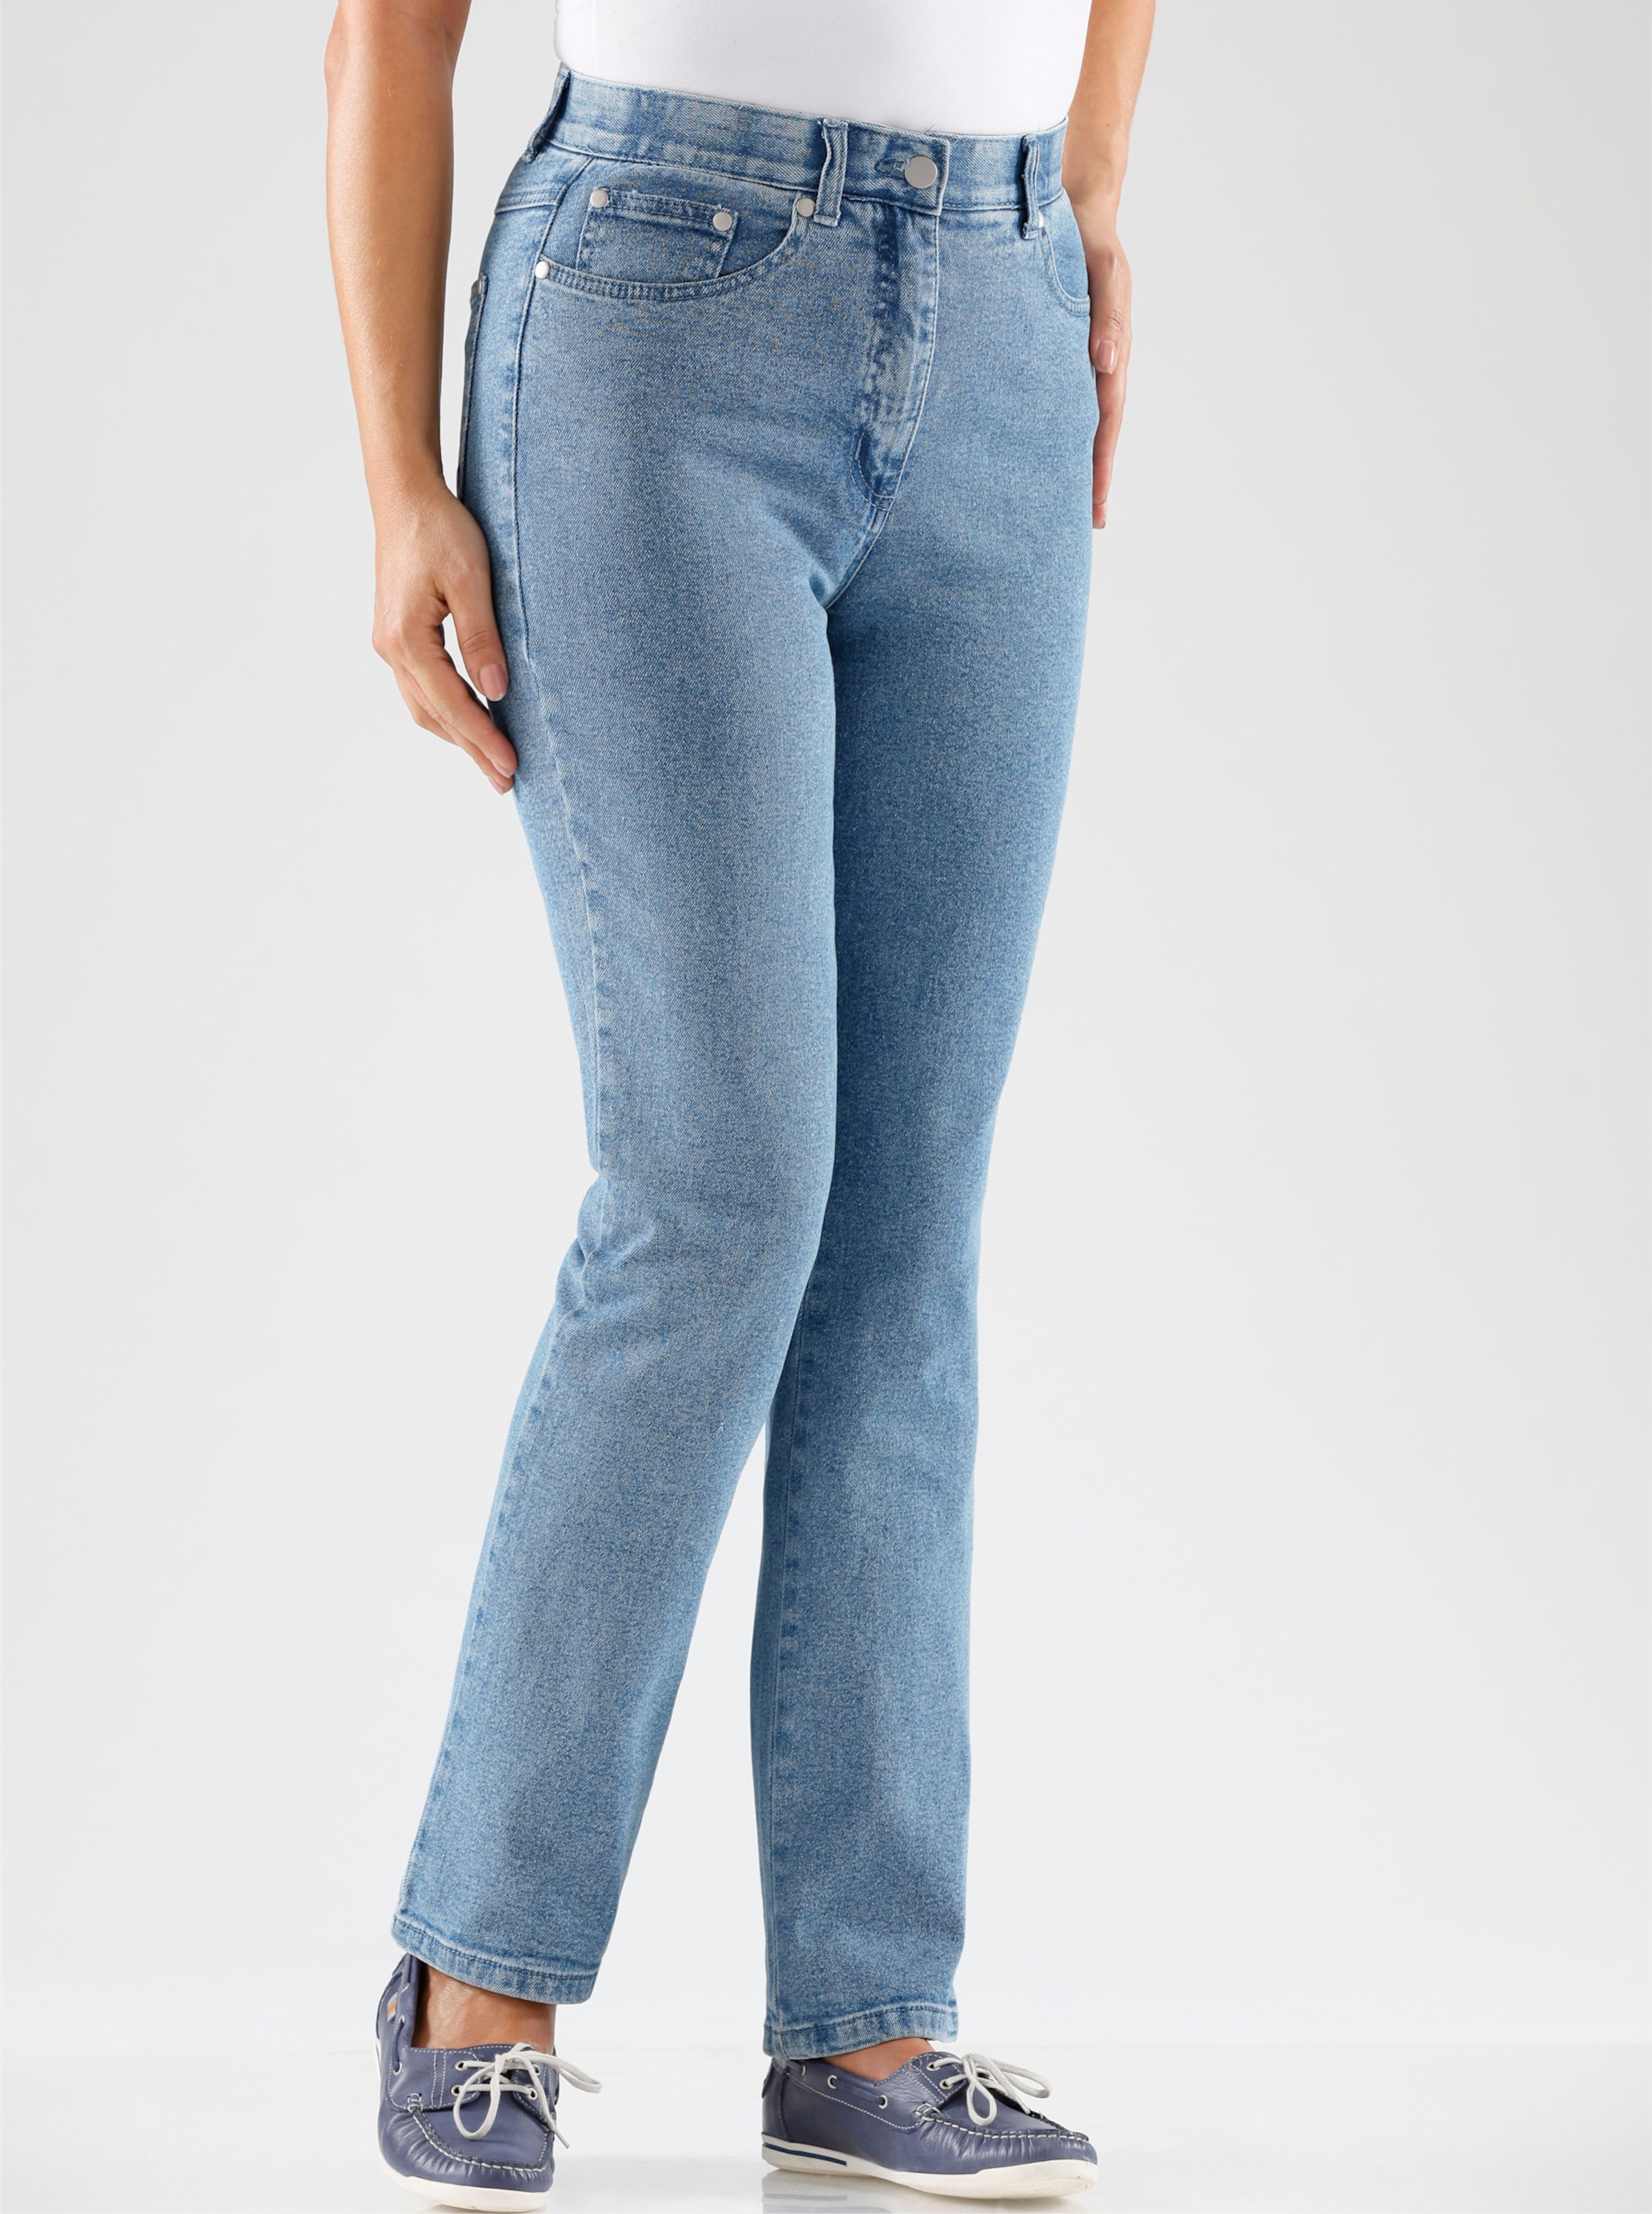 Witt Damen 5-Pocket-Jeans, blue-bleached